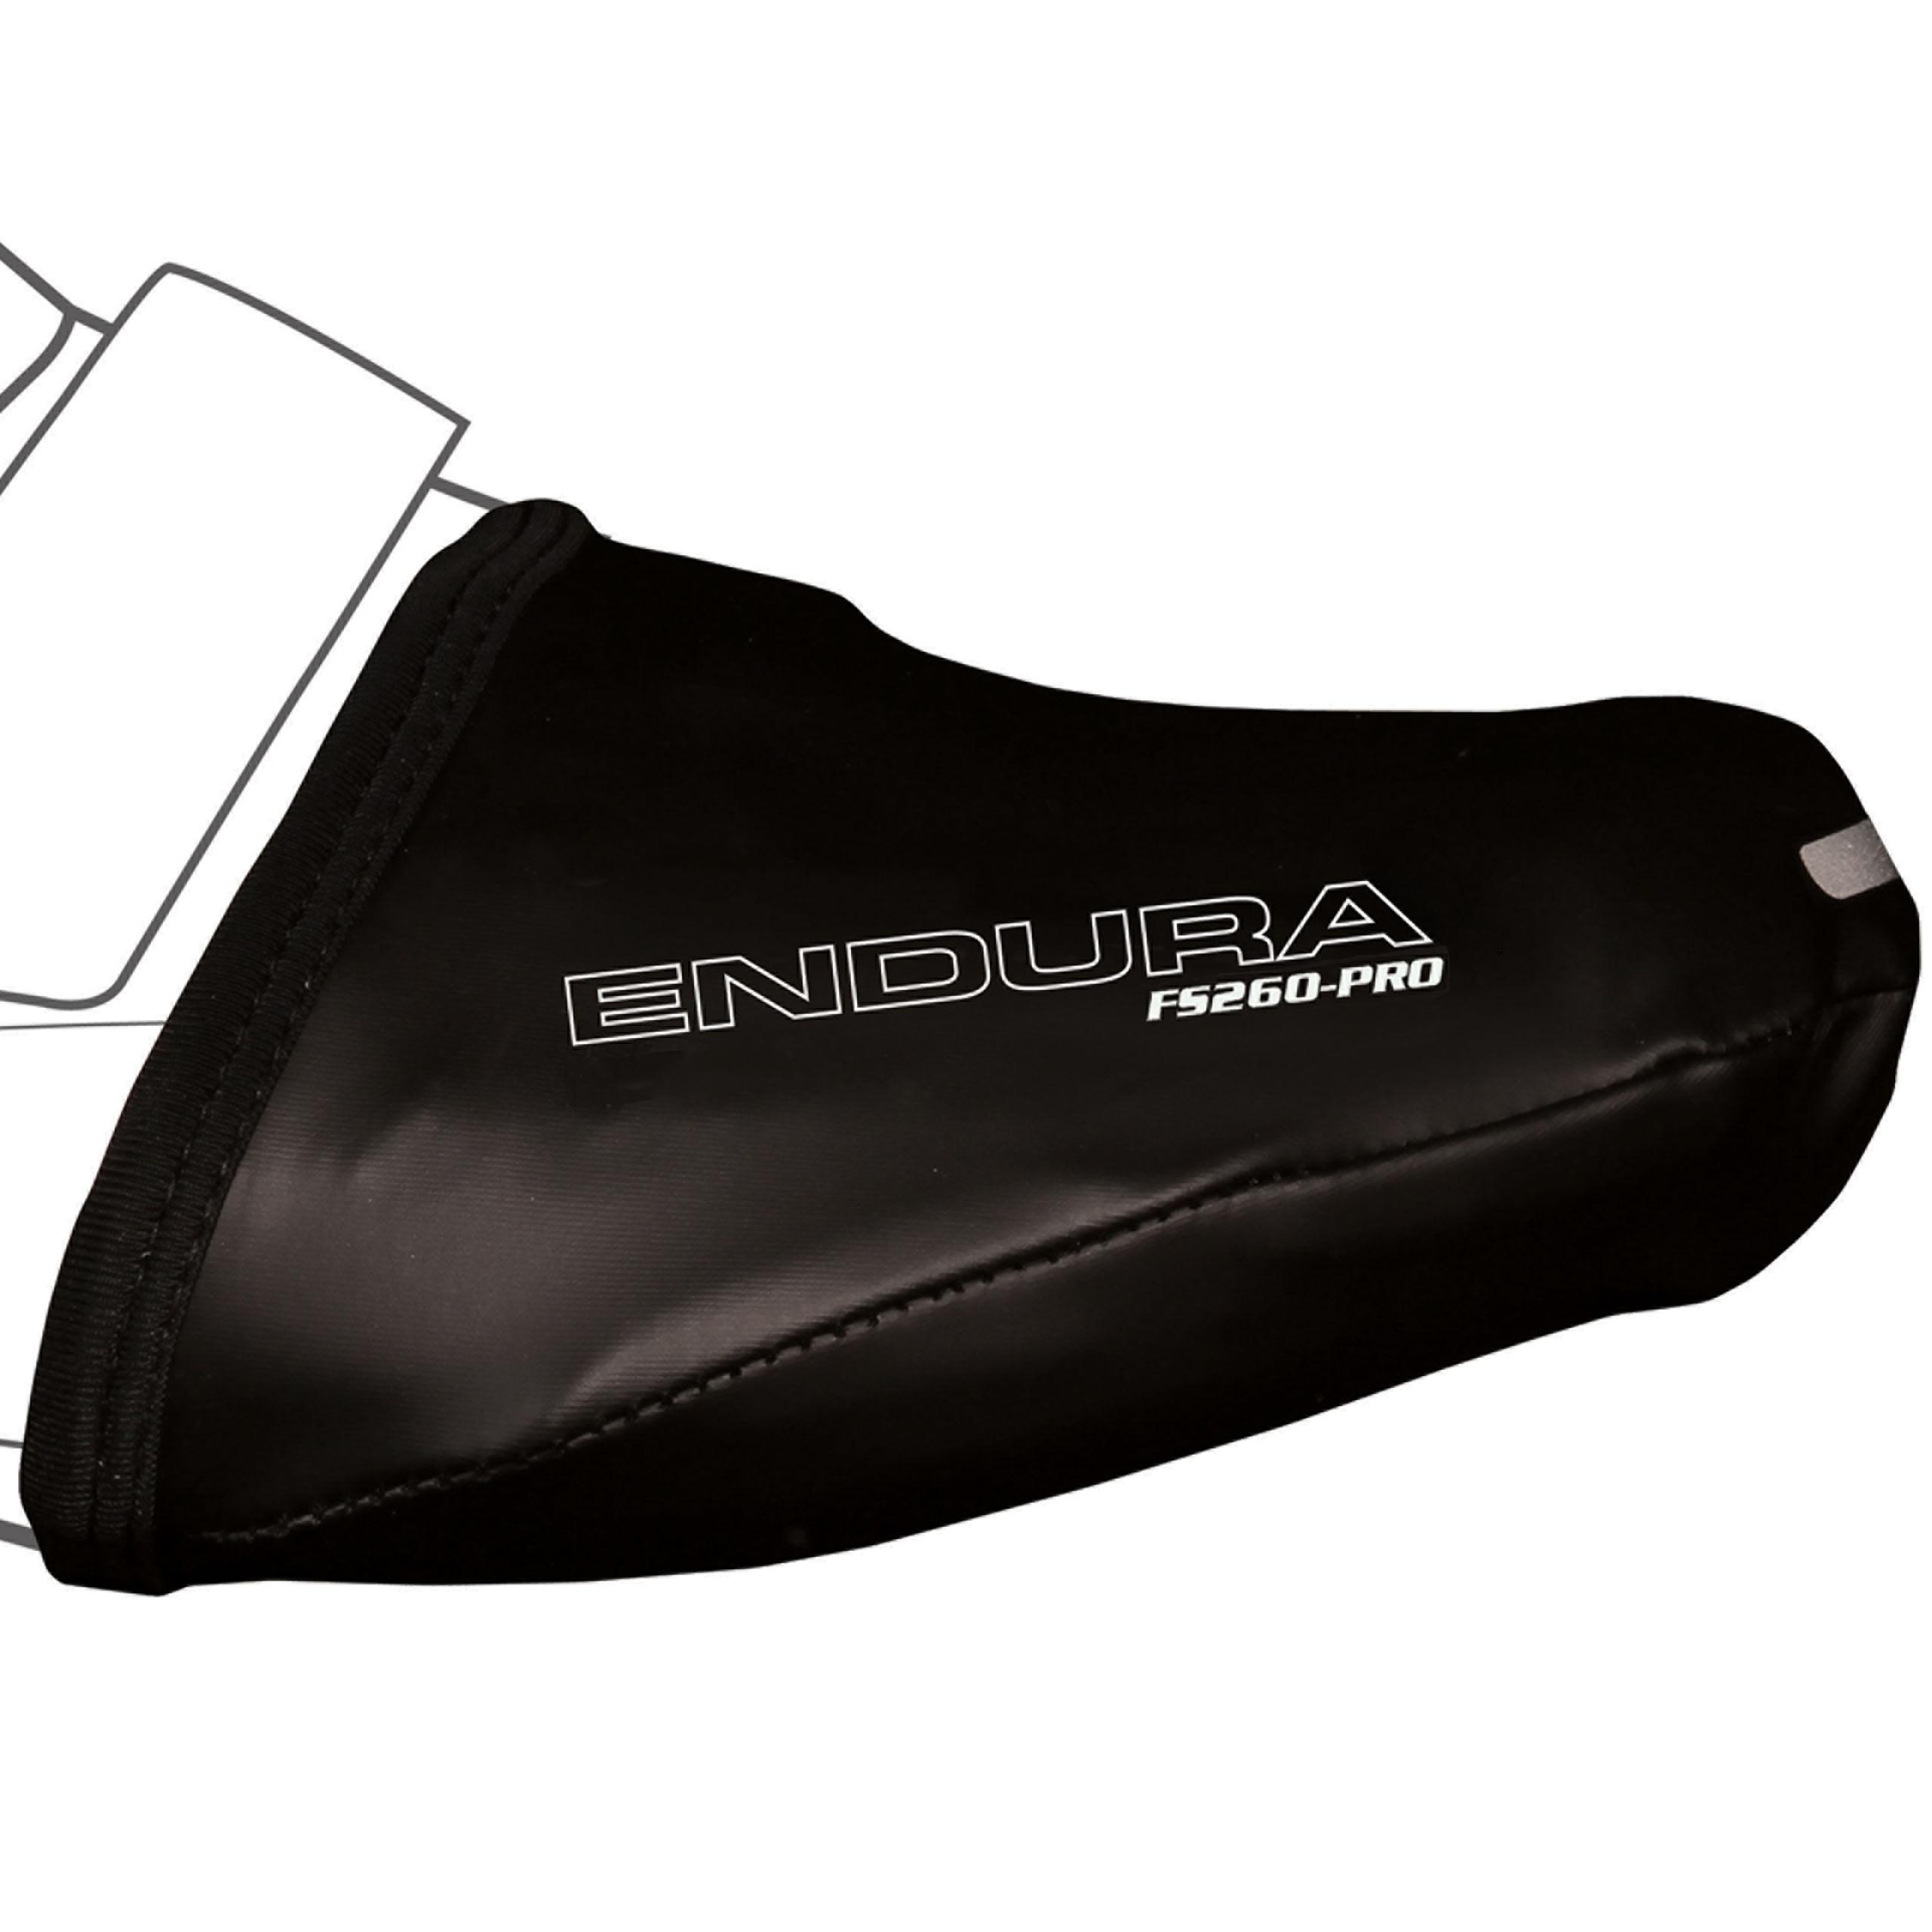 Endura Fs260 Pro Slick Overshoe Toe Cover  Black